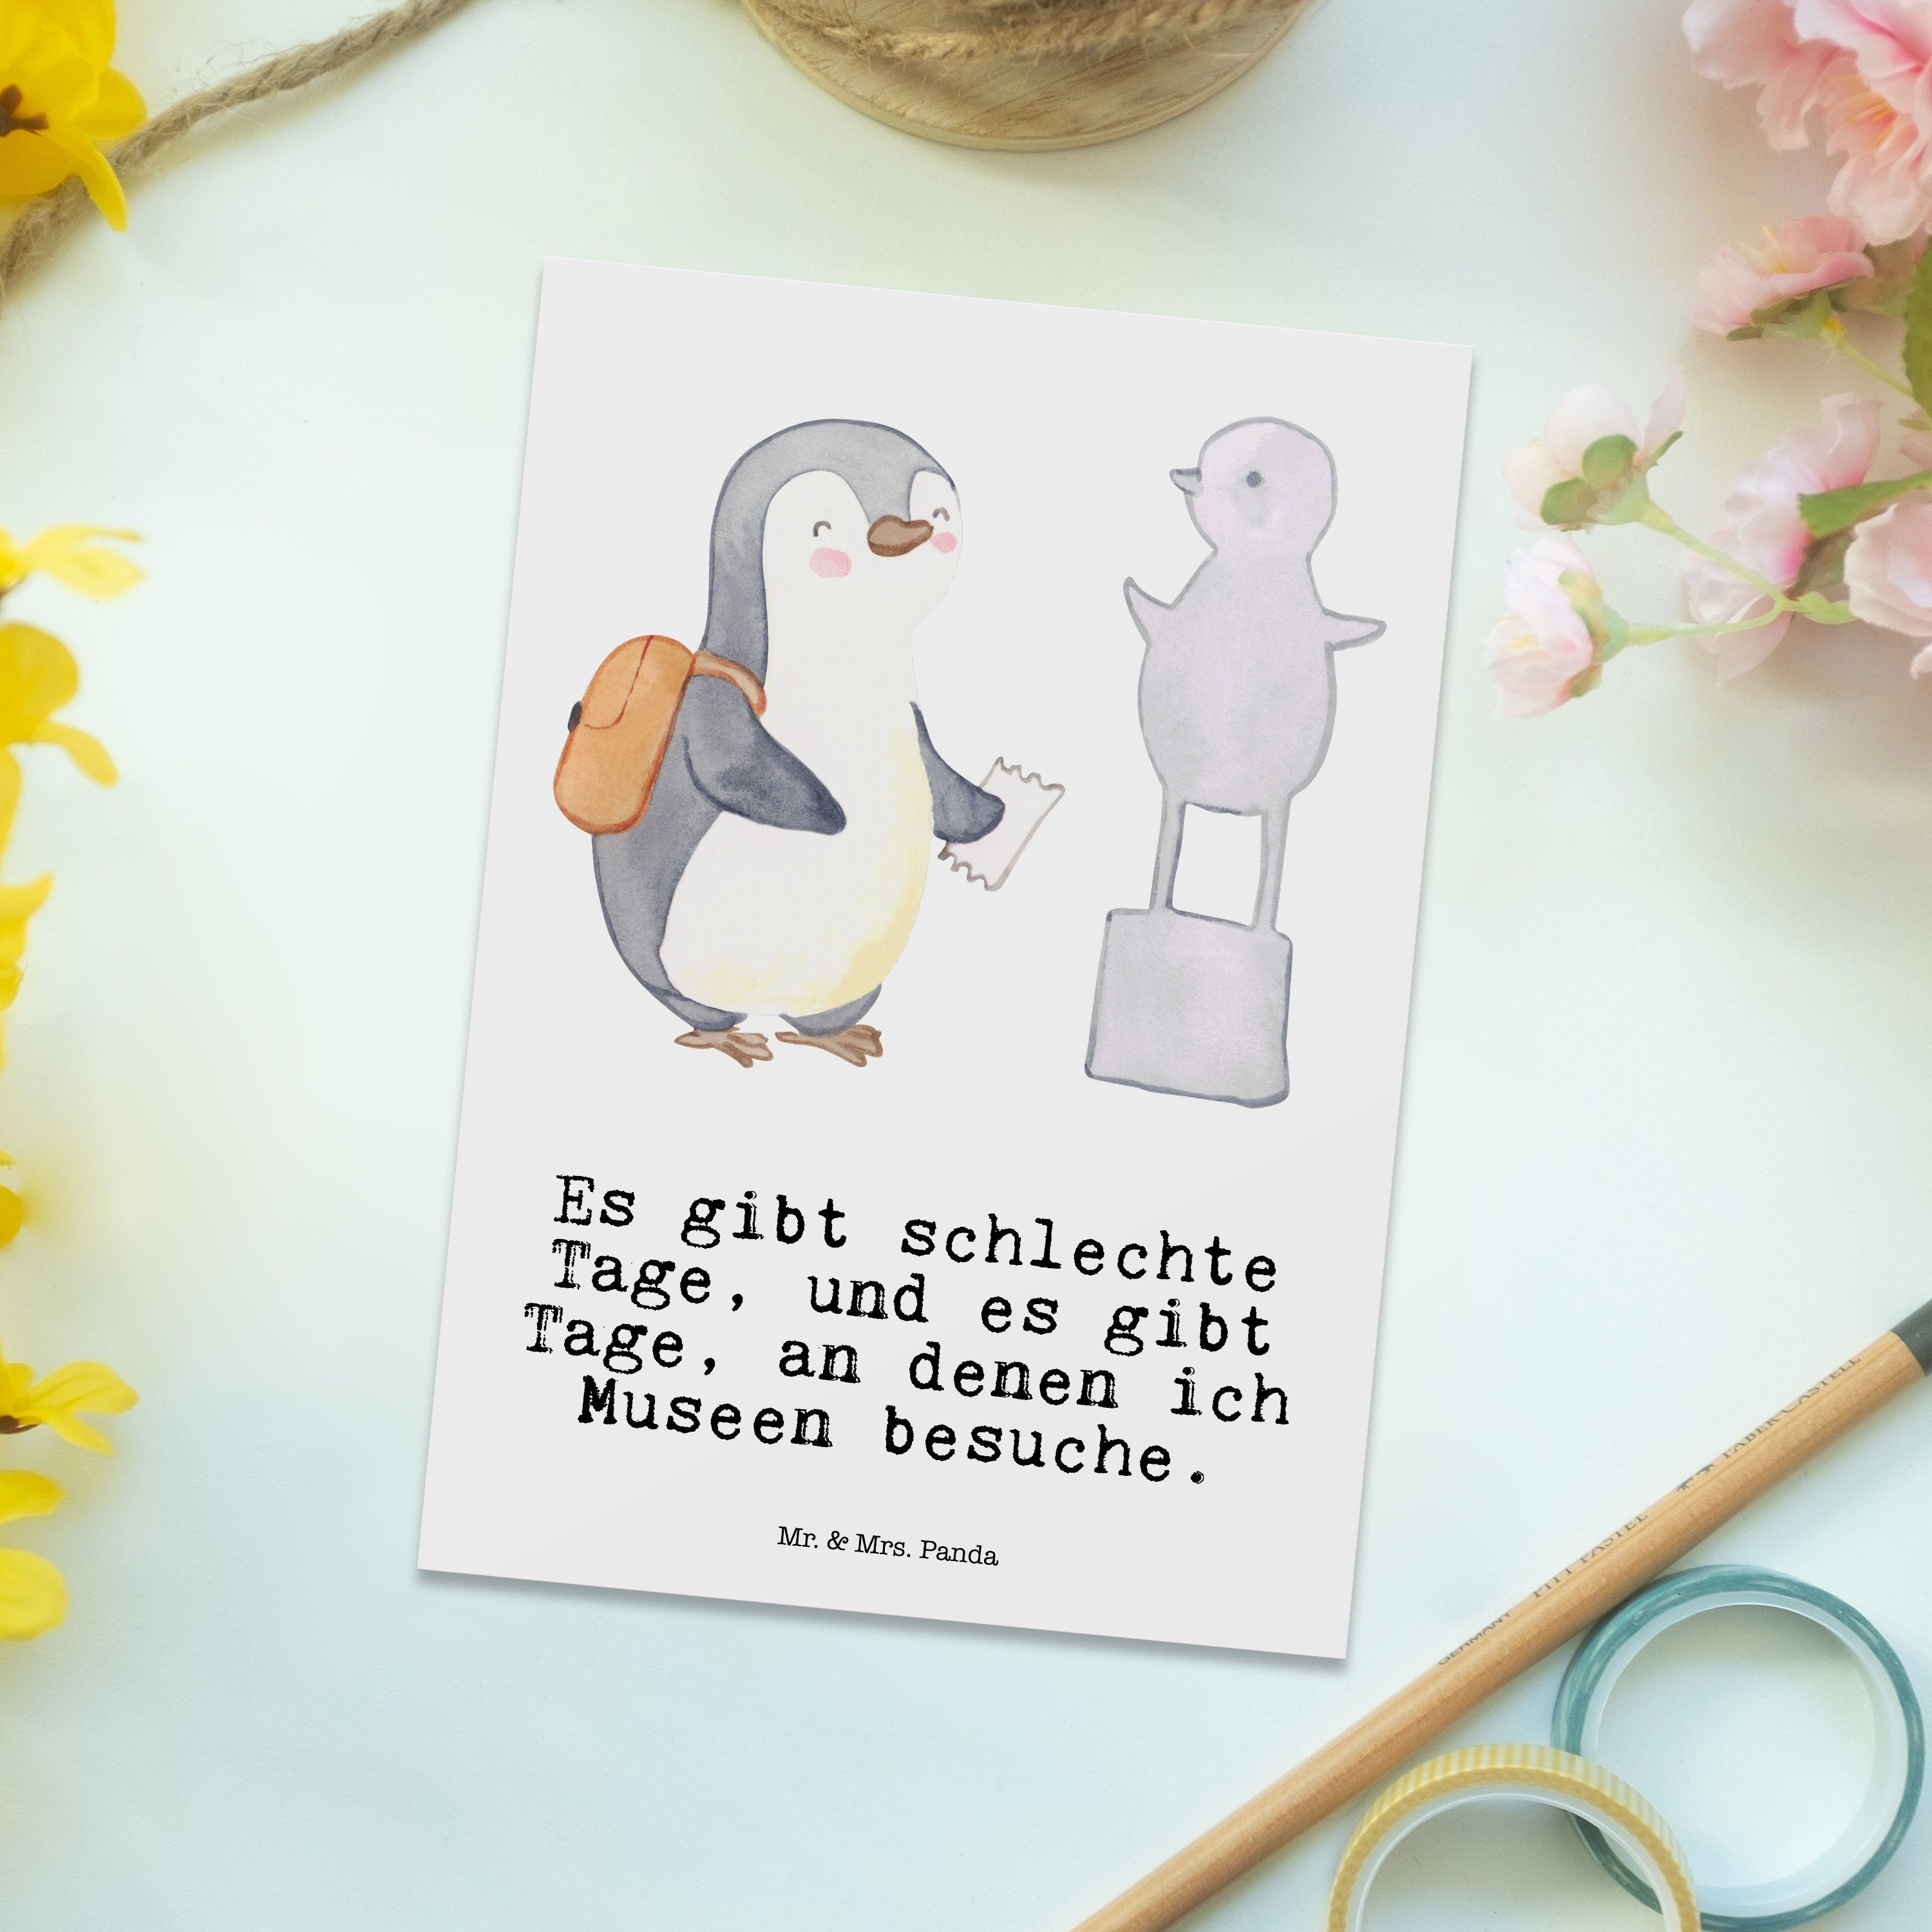 Mr. & Mrs. - Auszeichnung, Weiß Museen Museum Panda Tage Postkarte Pinguin - besuchen Geschenk